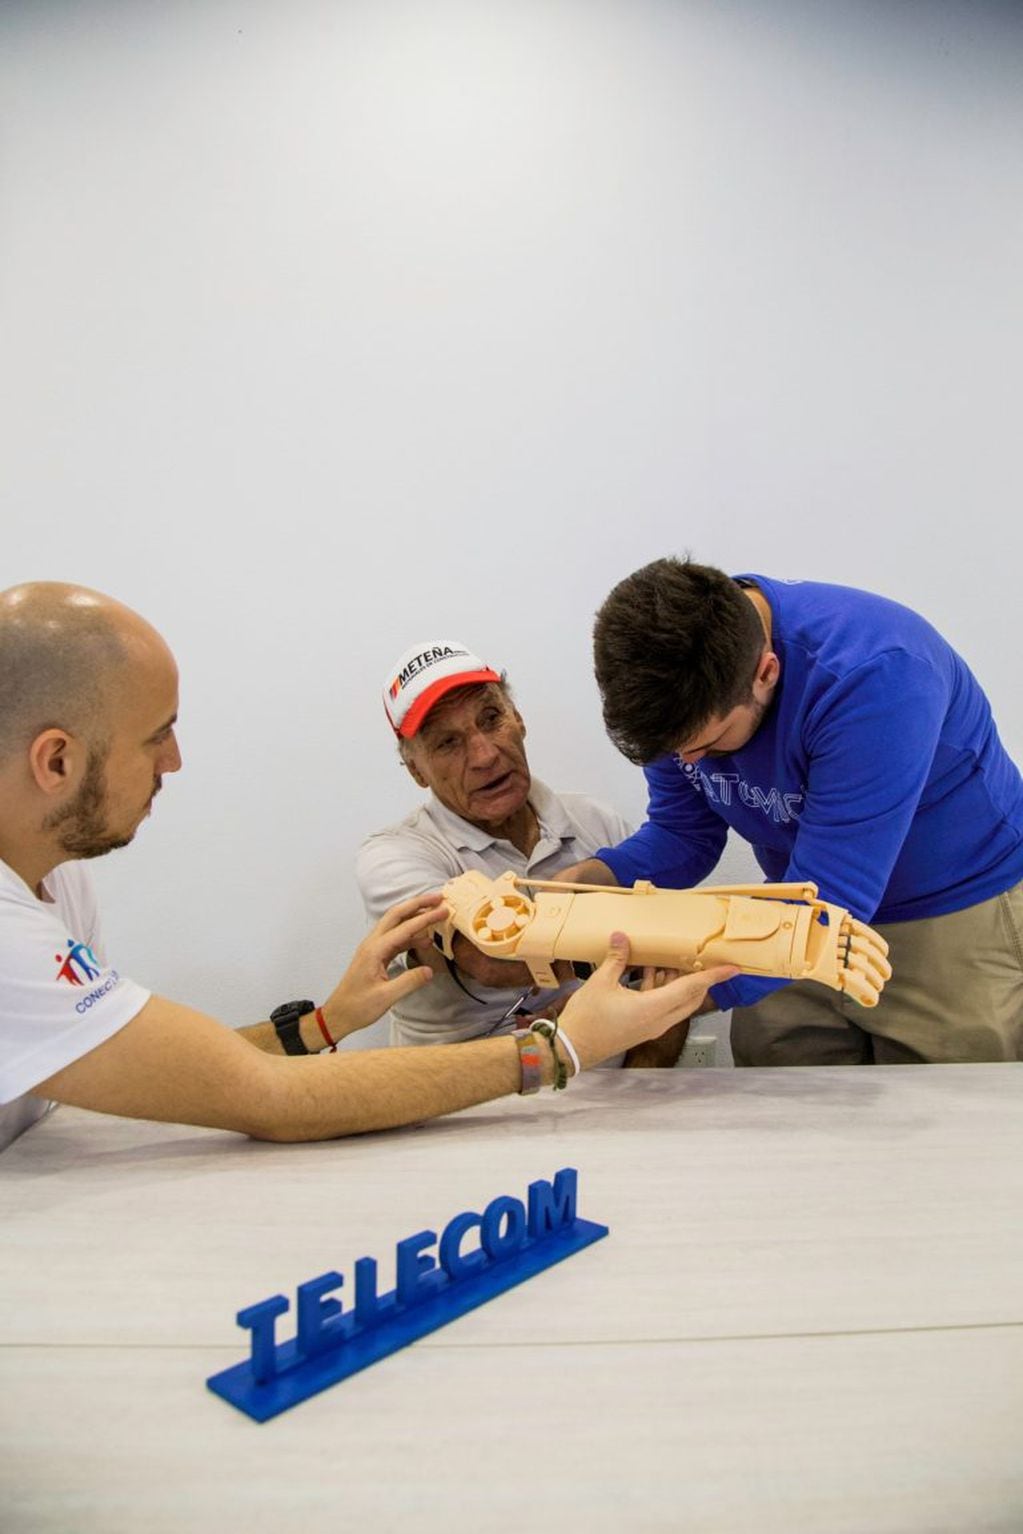 Miguel Carranza recibió la prótesis de su brazo, como también varias personas que se vieron beneficiadas por este "Manotón". (Telecom)